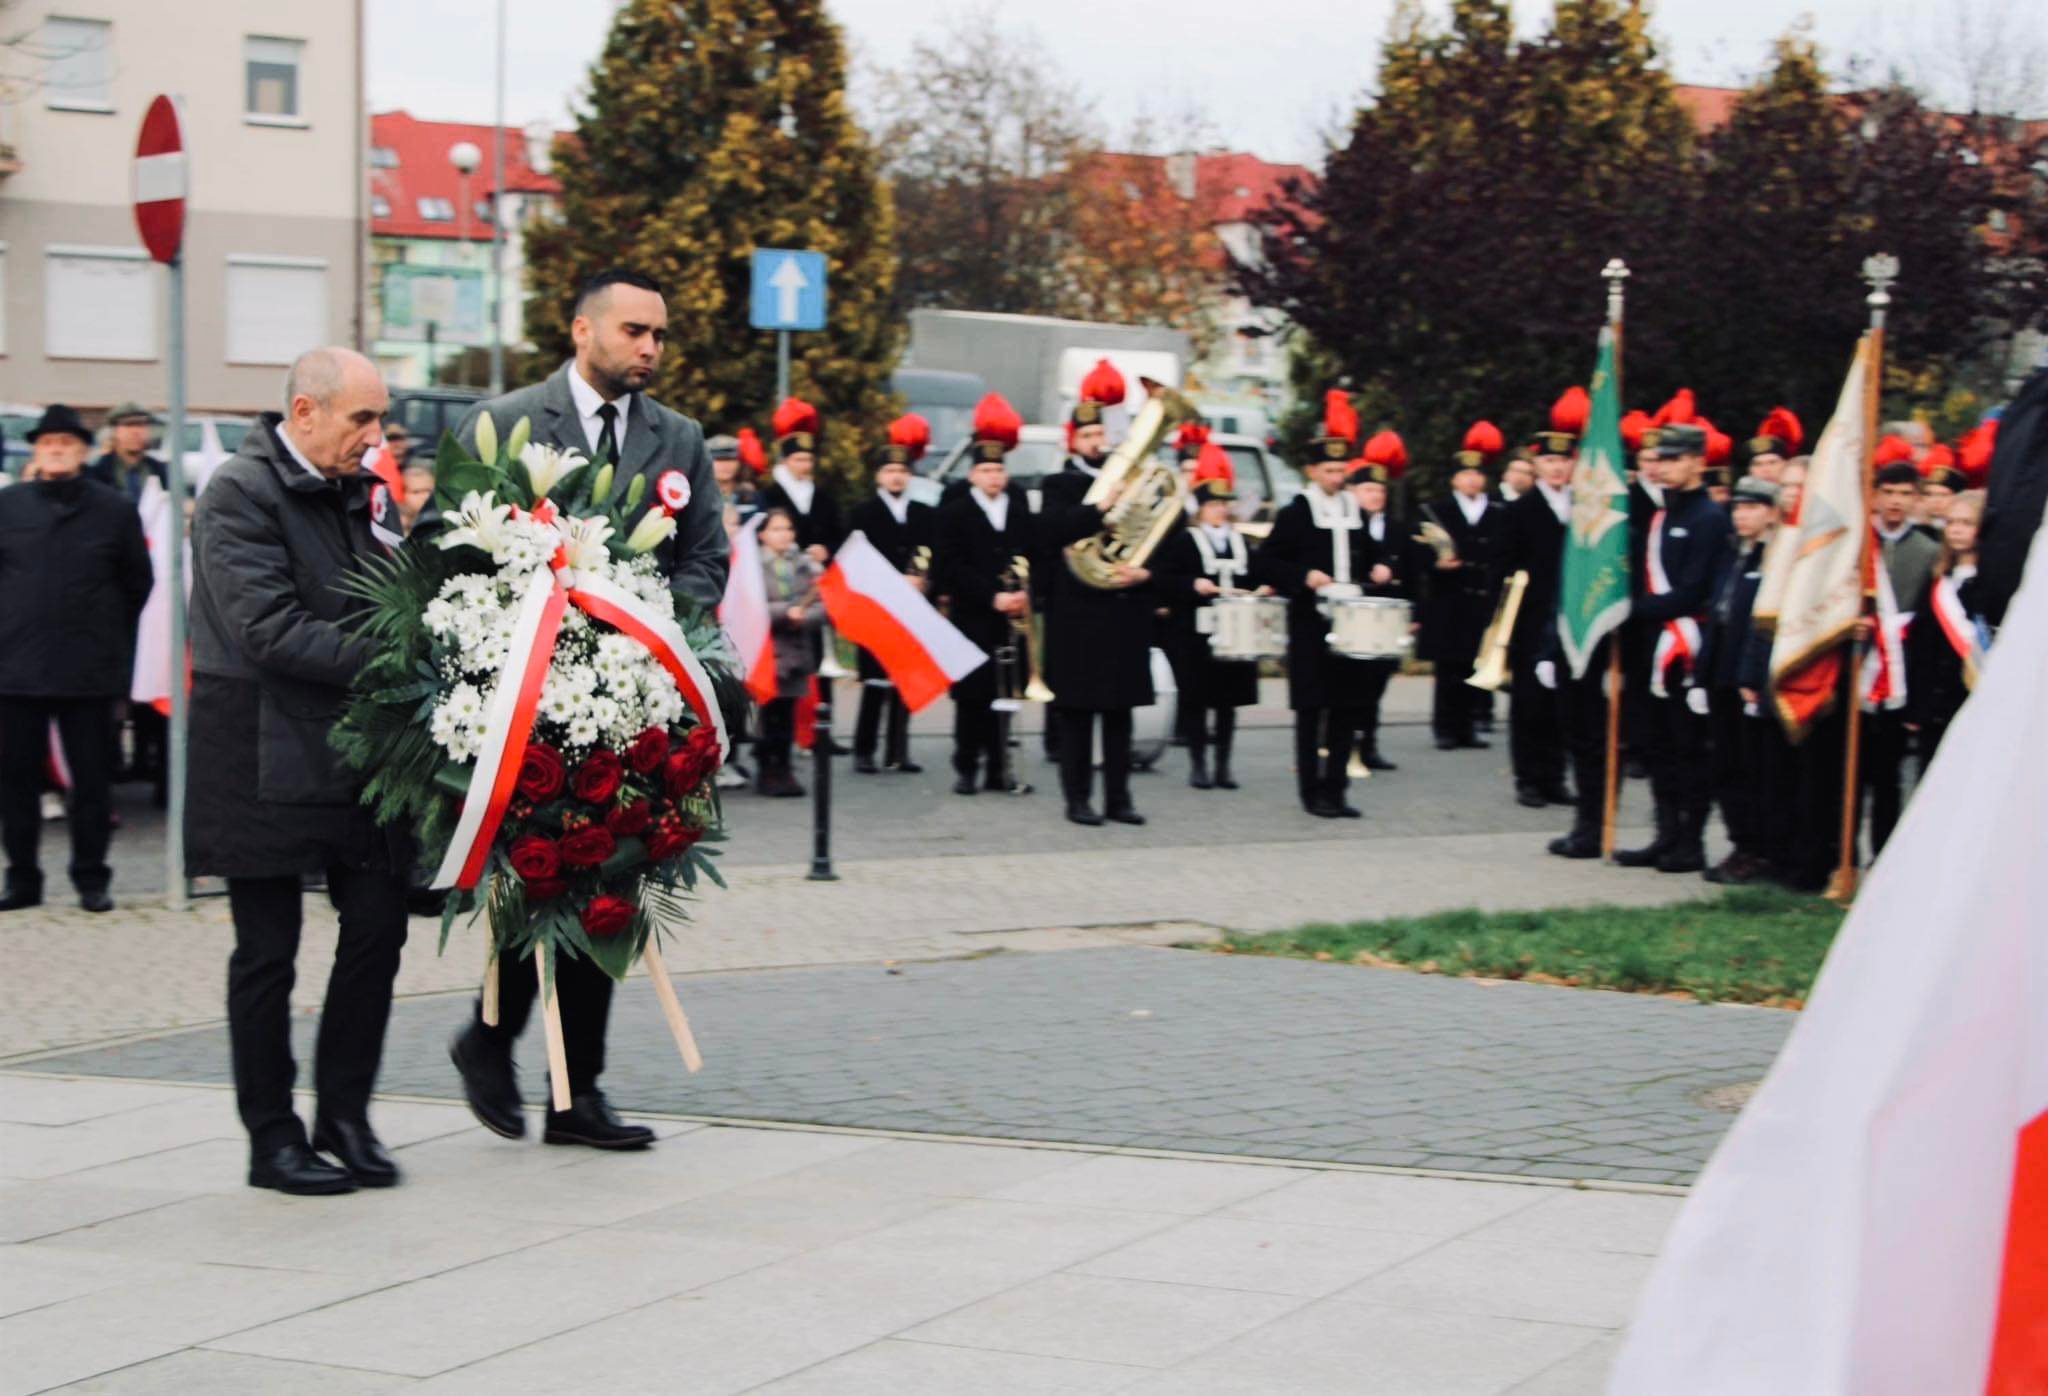 Władze powiatu polkowickiego niosą wieniec z kwiatami pod pomnik podczas obchodów święta niepodległości